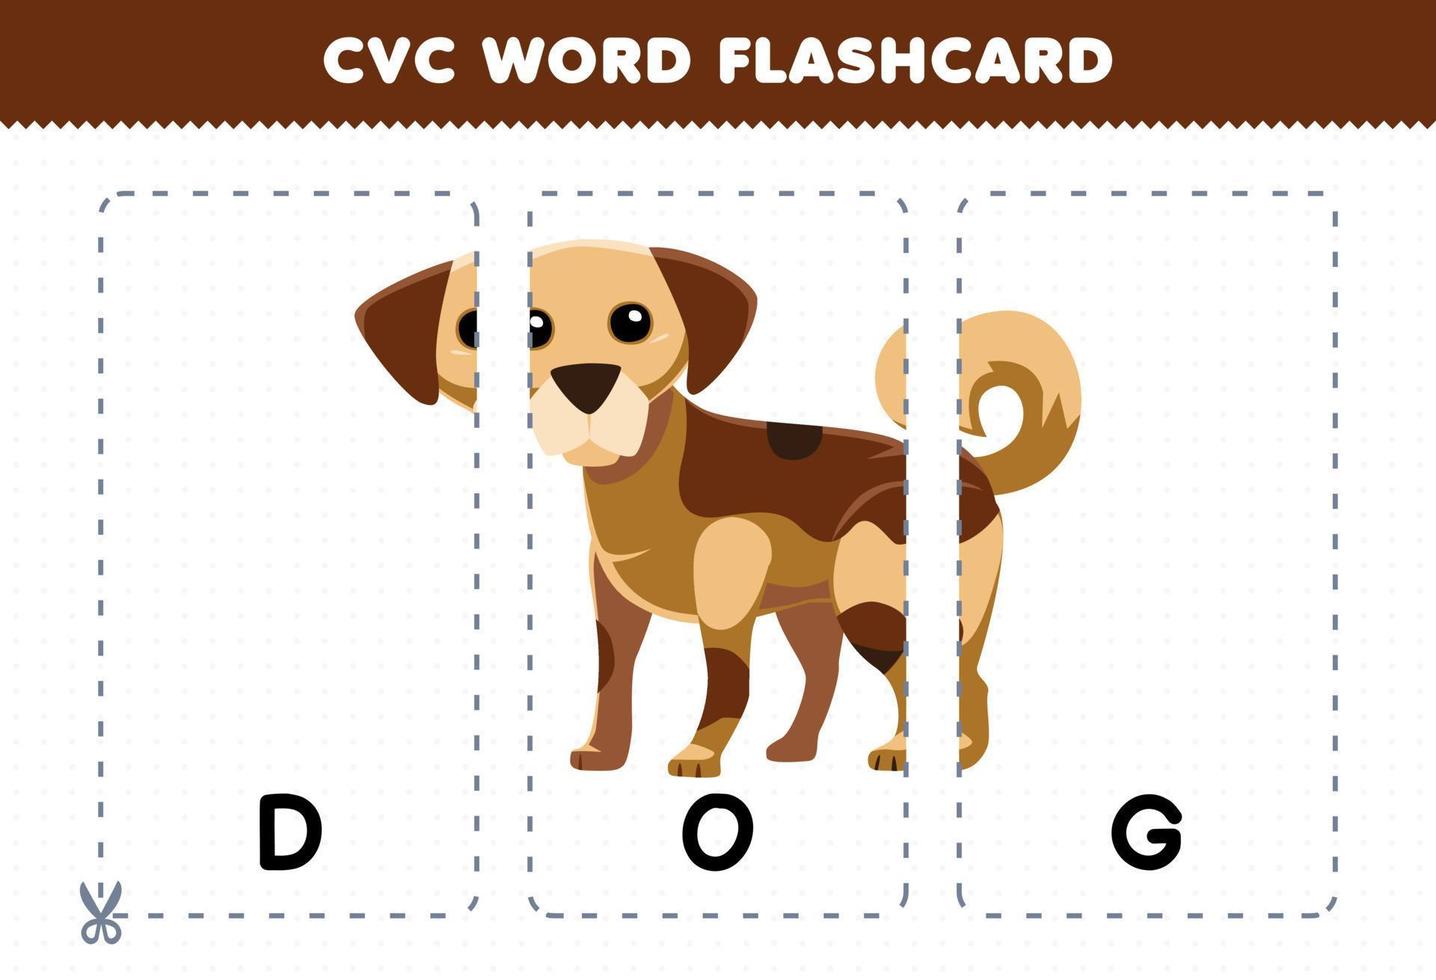 jogo de educação para crianças aprendendo palavra consoante vogal consoante com cartão de memória para impressão de ilustração de cachorro bonito dos desenhos animados vetor